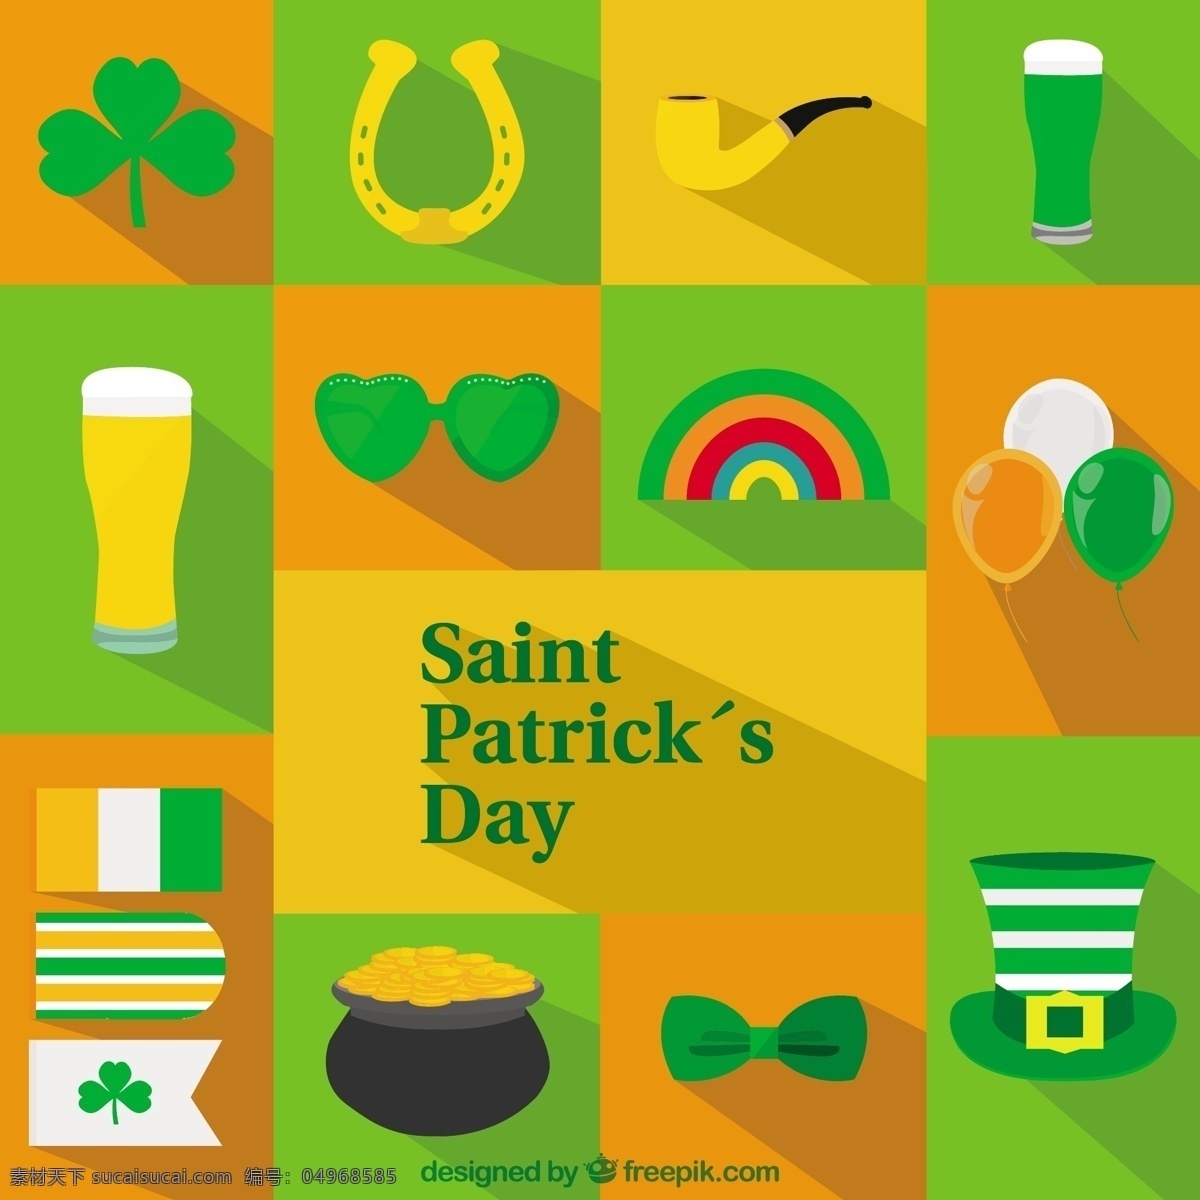 圣 巴特里克 节 图标 卡 啤酒 绿色 帽子 假日 三叶草 圣帕特里克日 爱尔兰 贺卡 问候 一天 圣帕特里克 帕特里克 传统 st 橙色